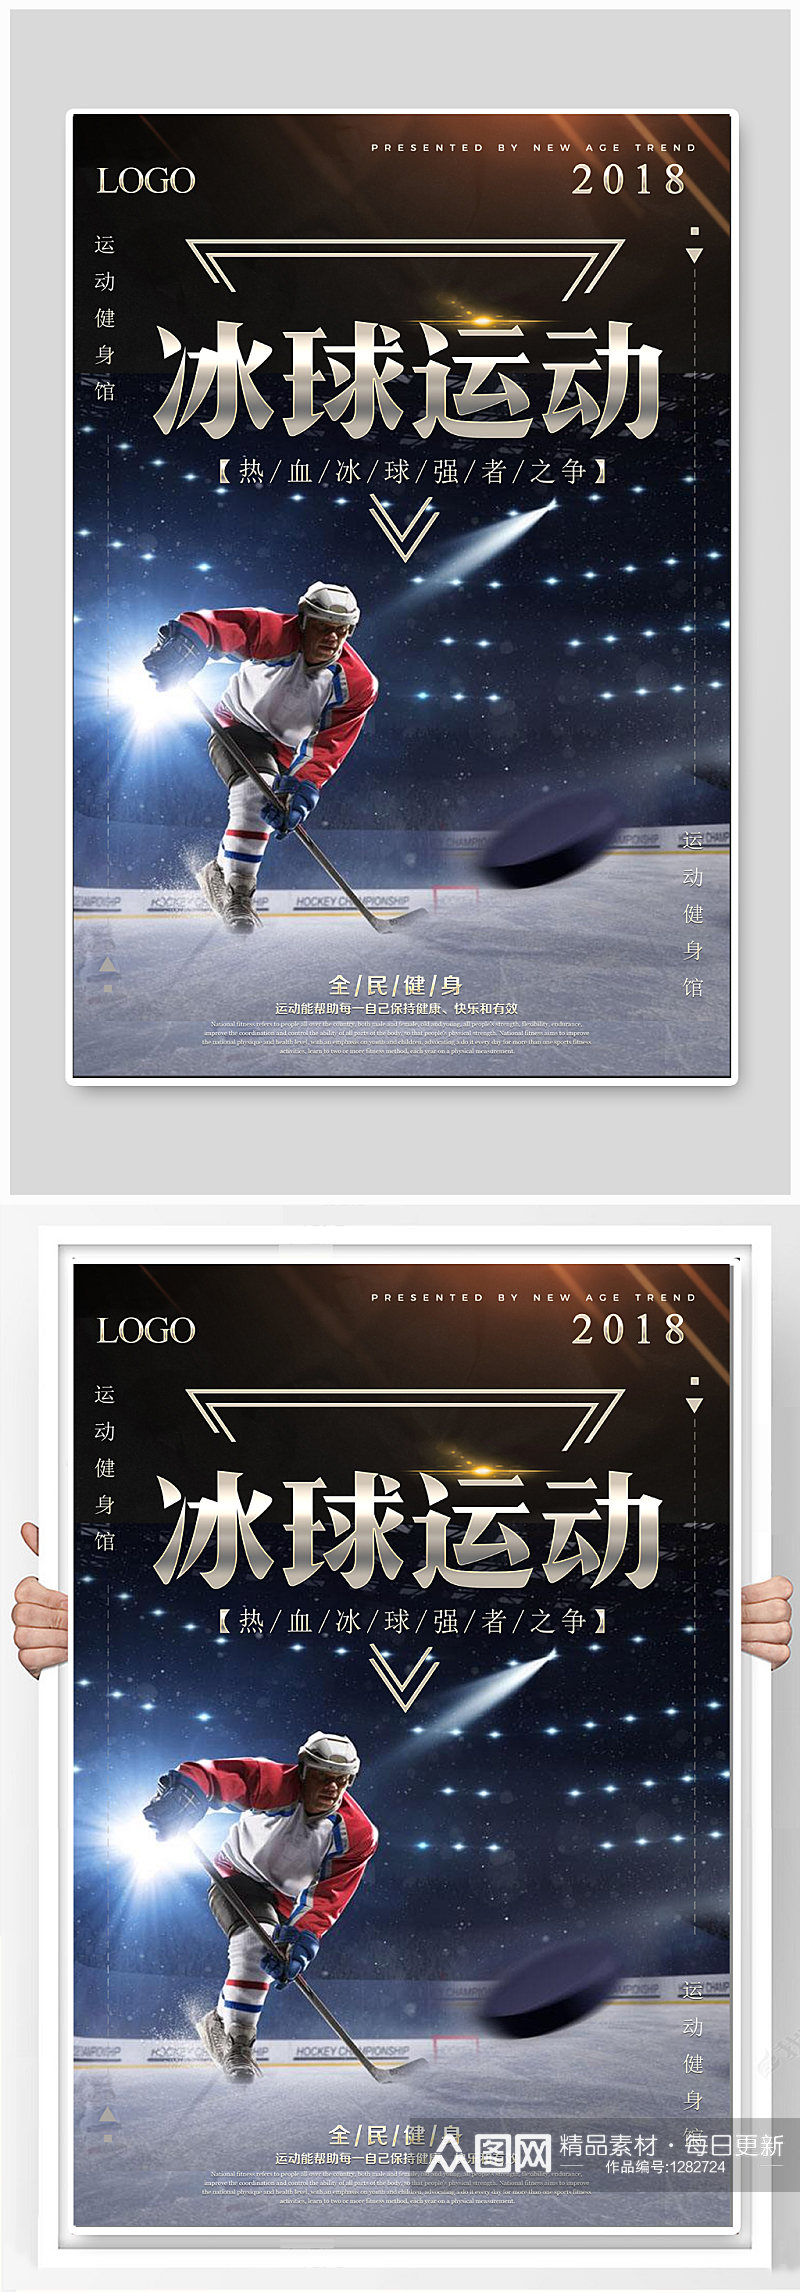 冰球运动体育运动海报素材